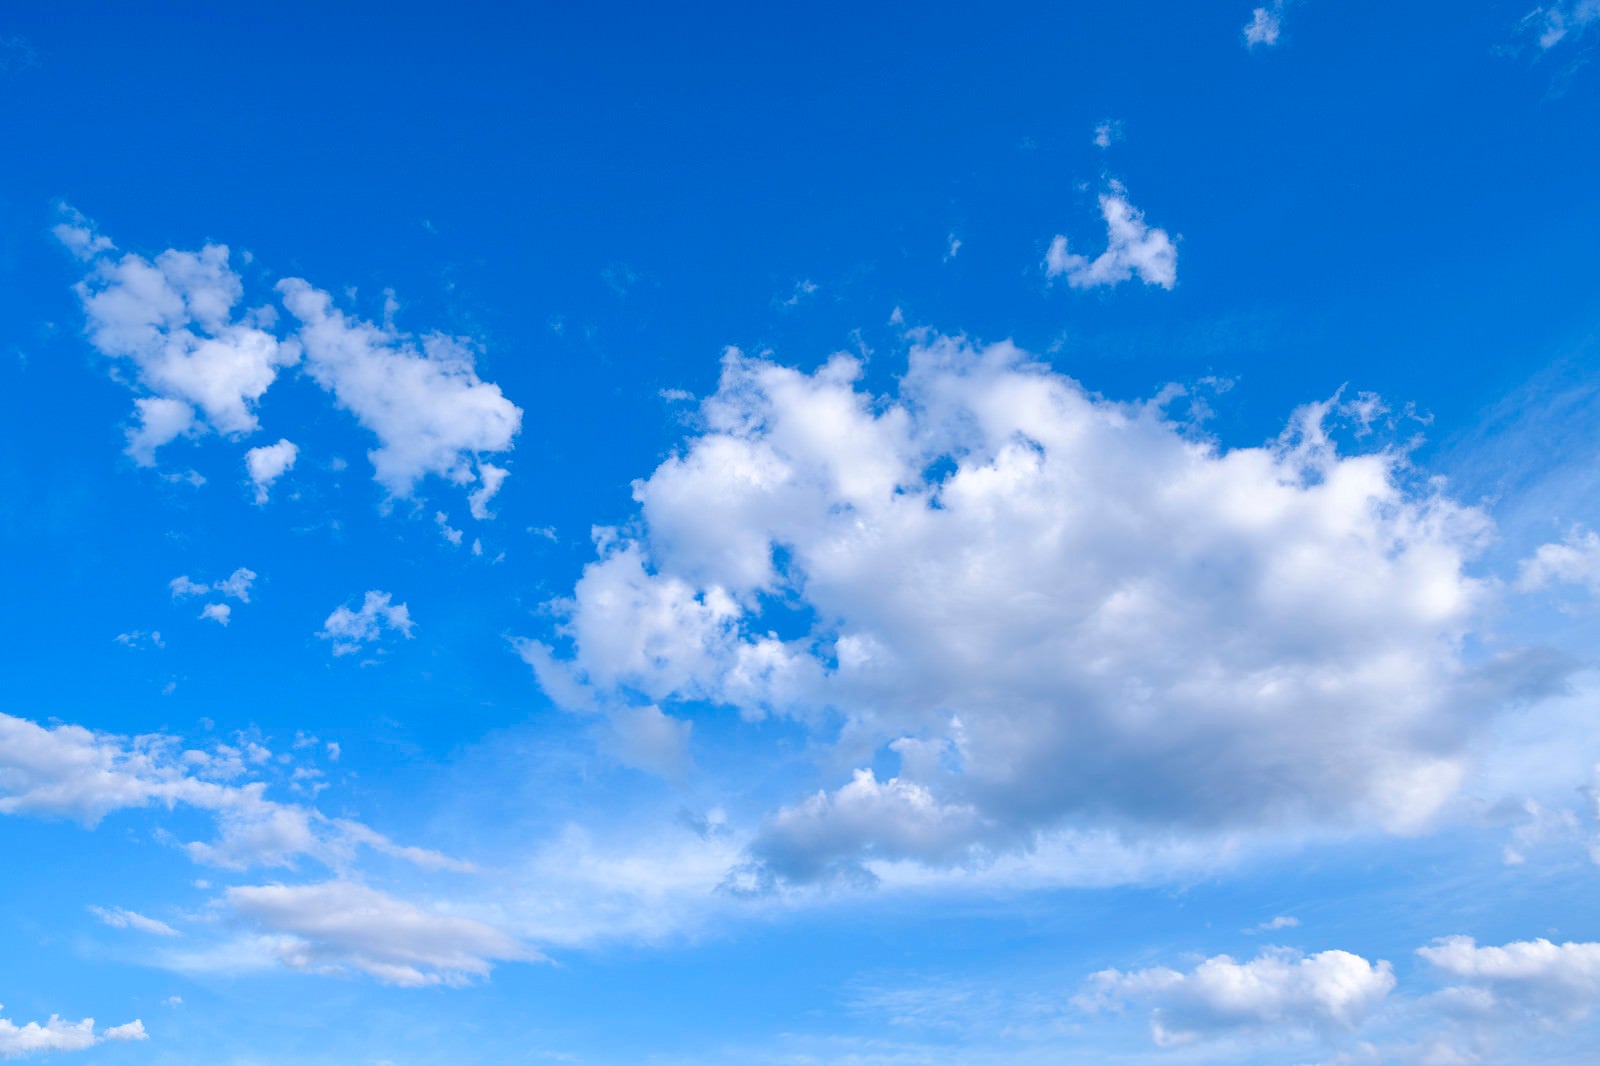 「青空に浮かぶ梅雨空の白い雲」の写真